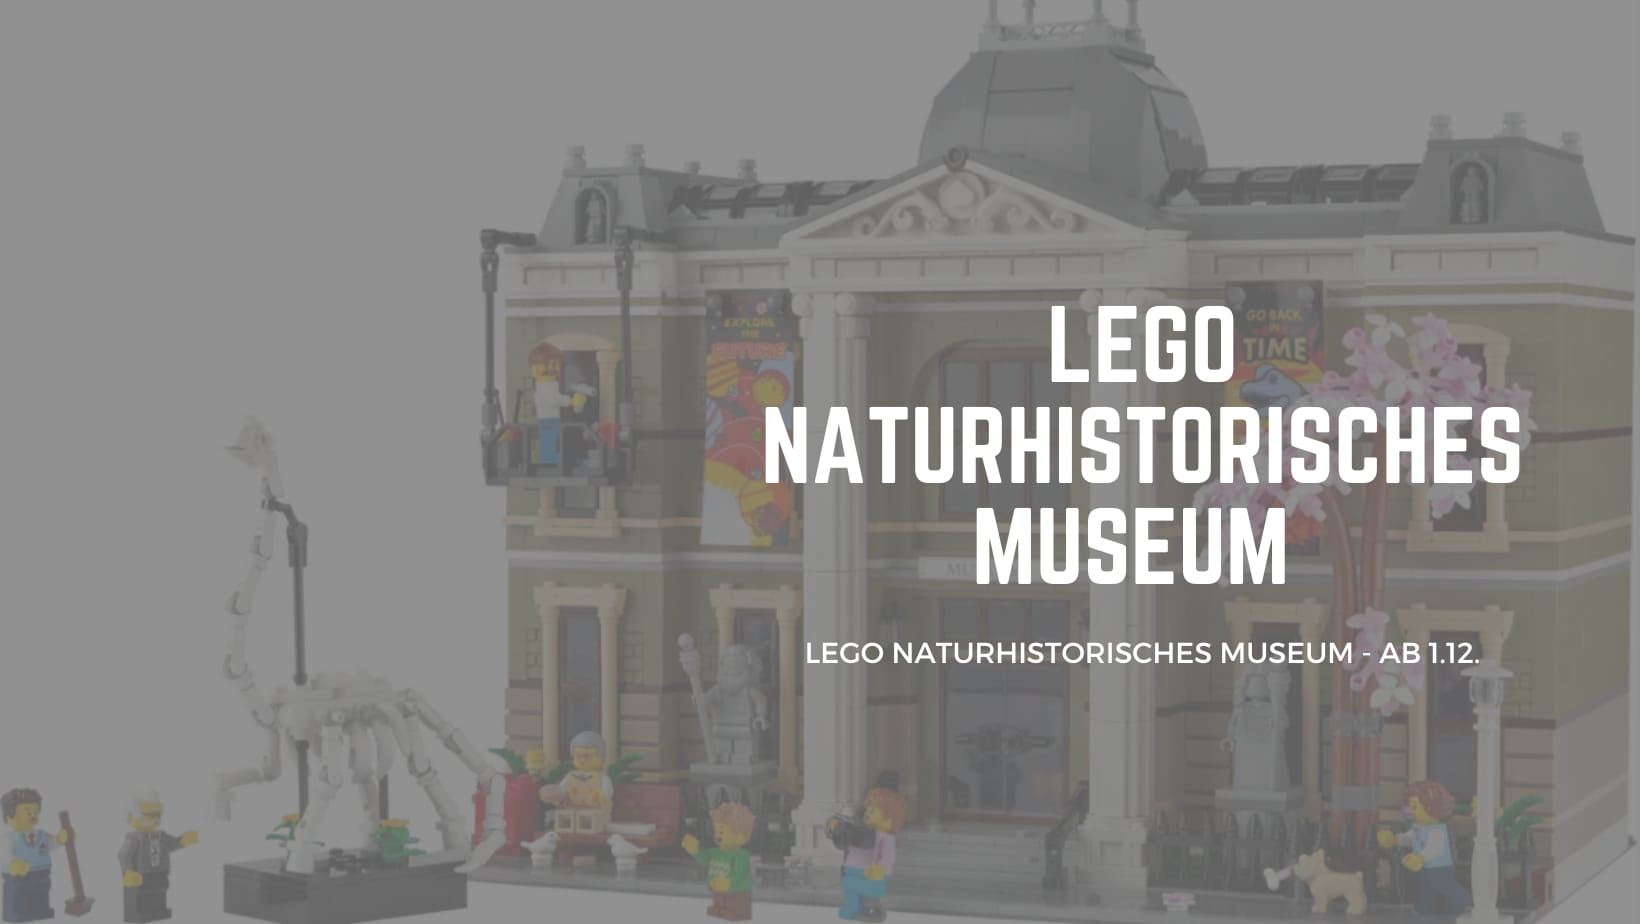 LEGO Naturhistorische Museum